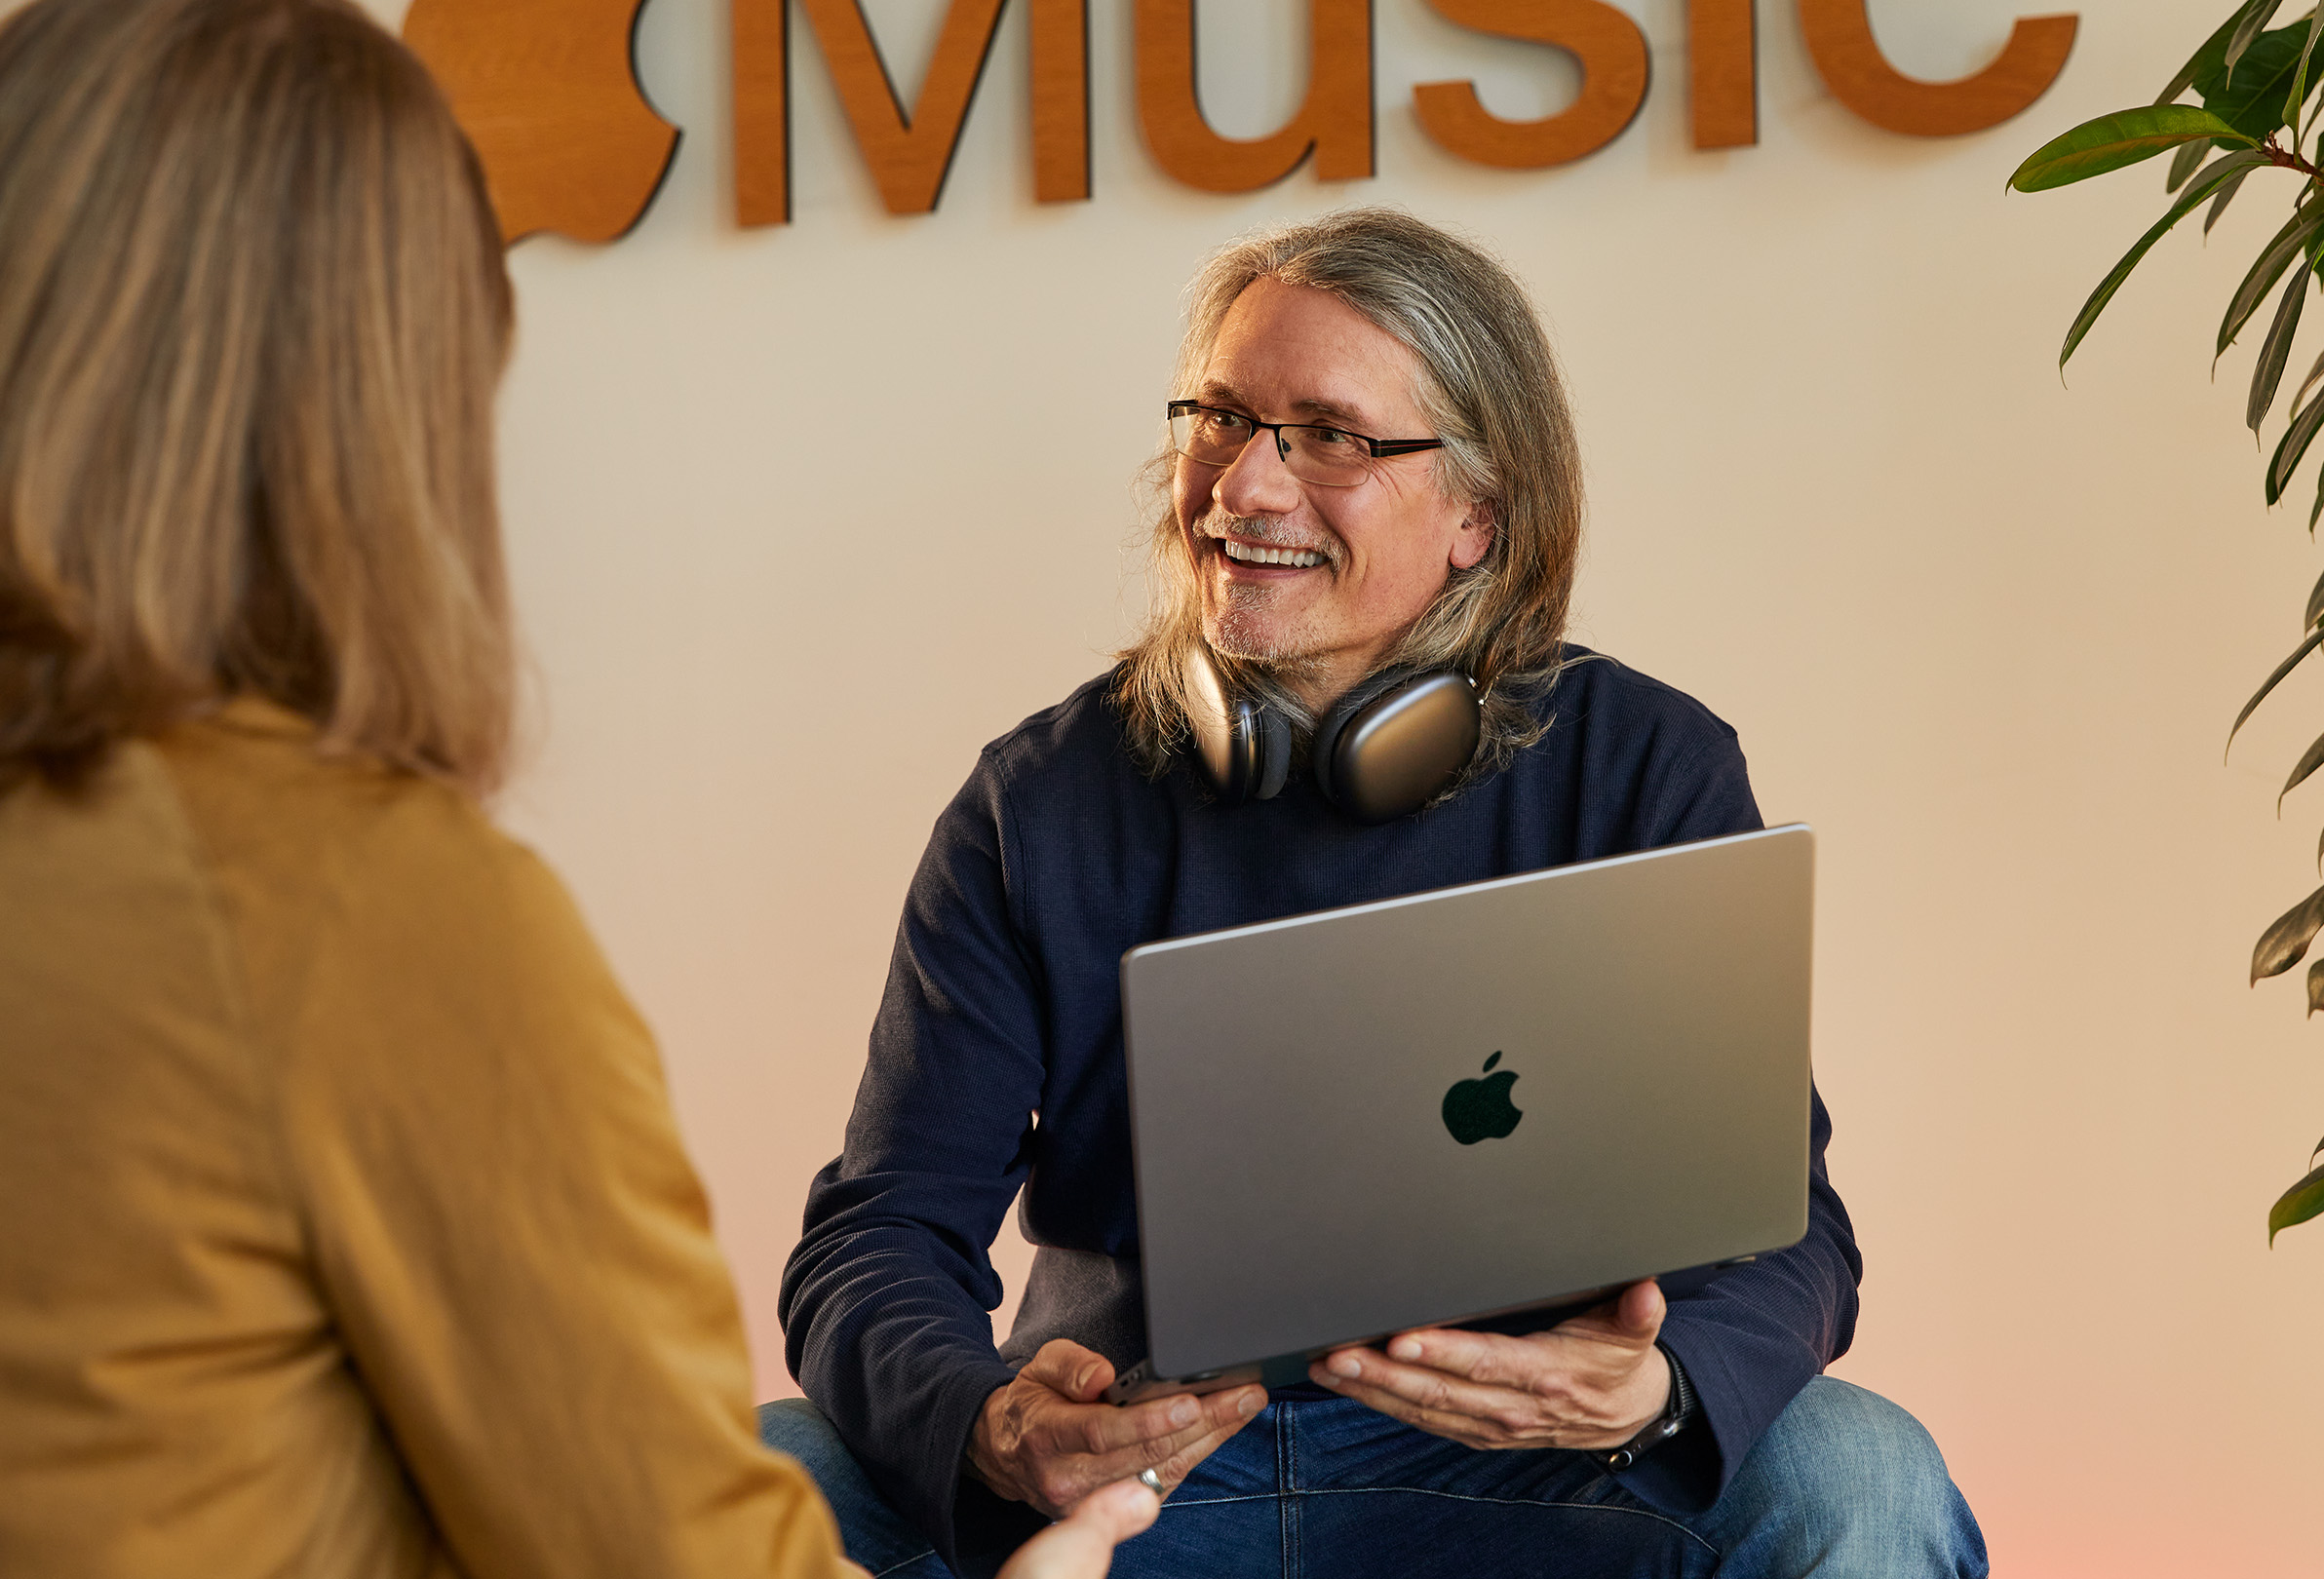 Deux membres du personnel d’Apple discutent ensemble. L’une d’elles a un MacBook sur les genoux et est assise devant un mur où on voit le logo d’Apple Music.